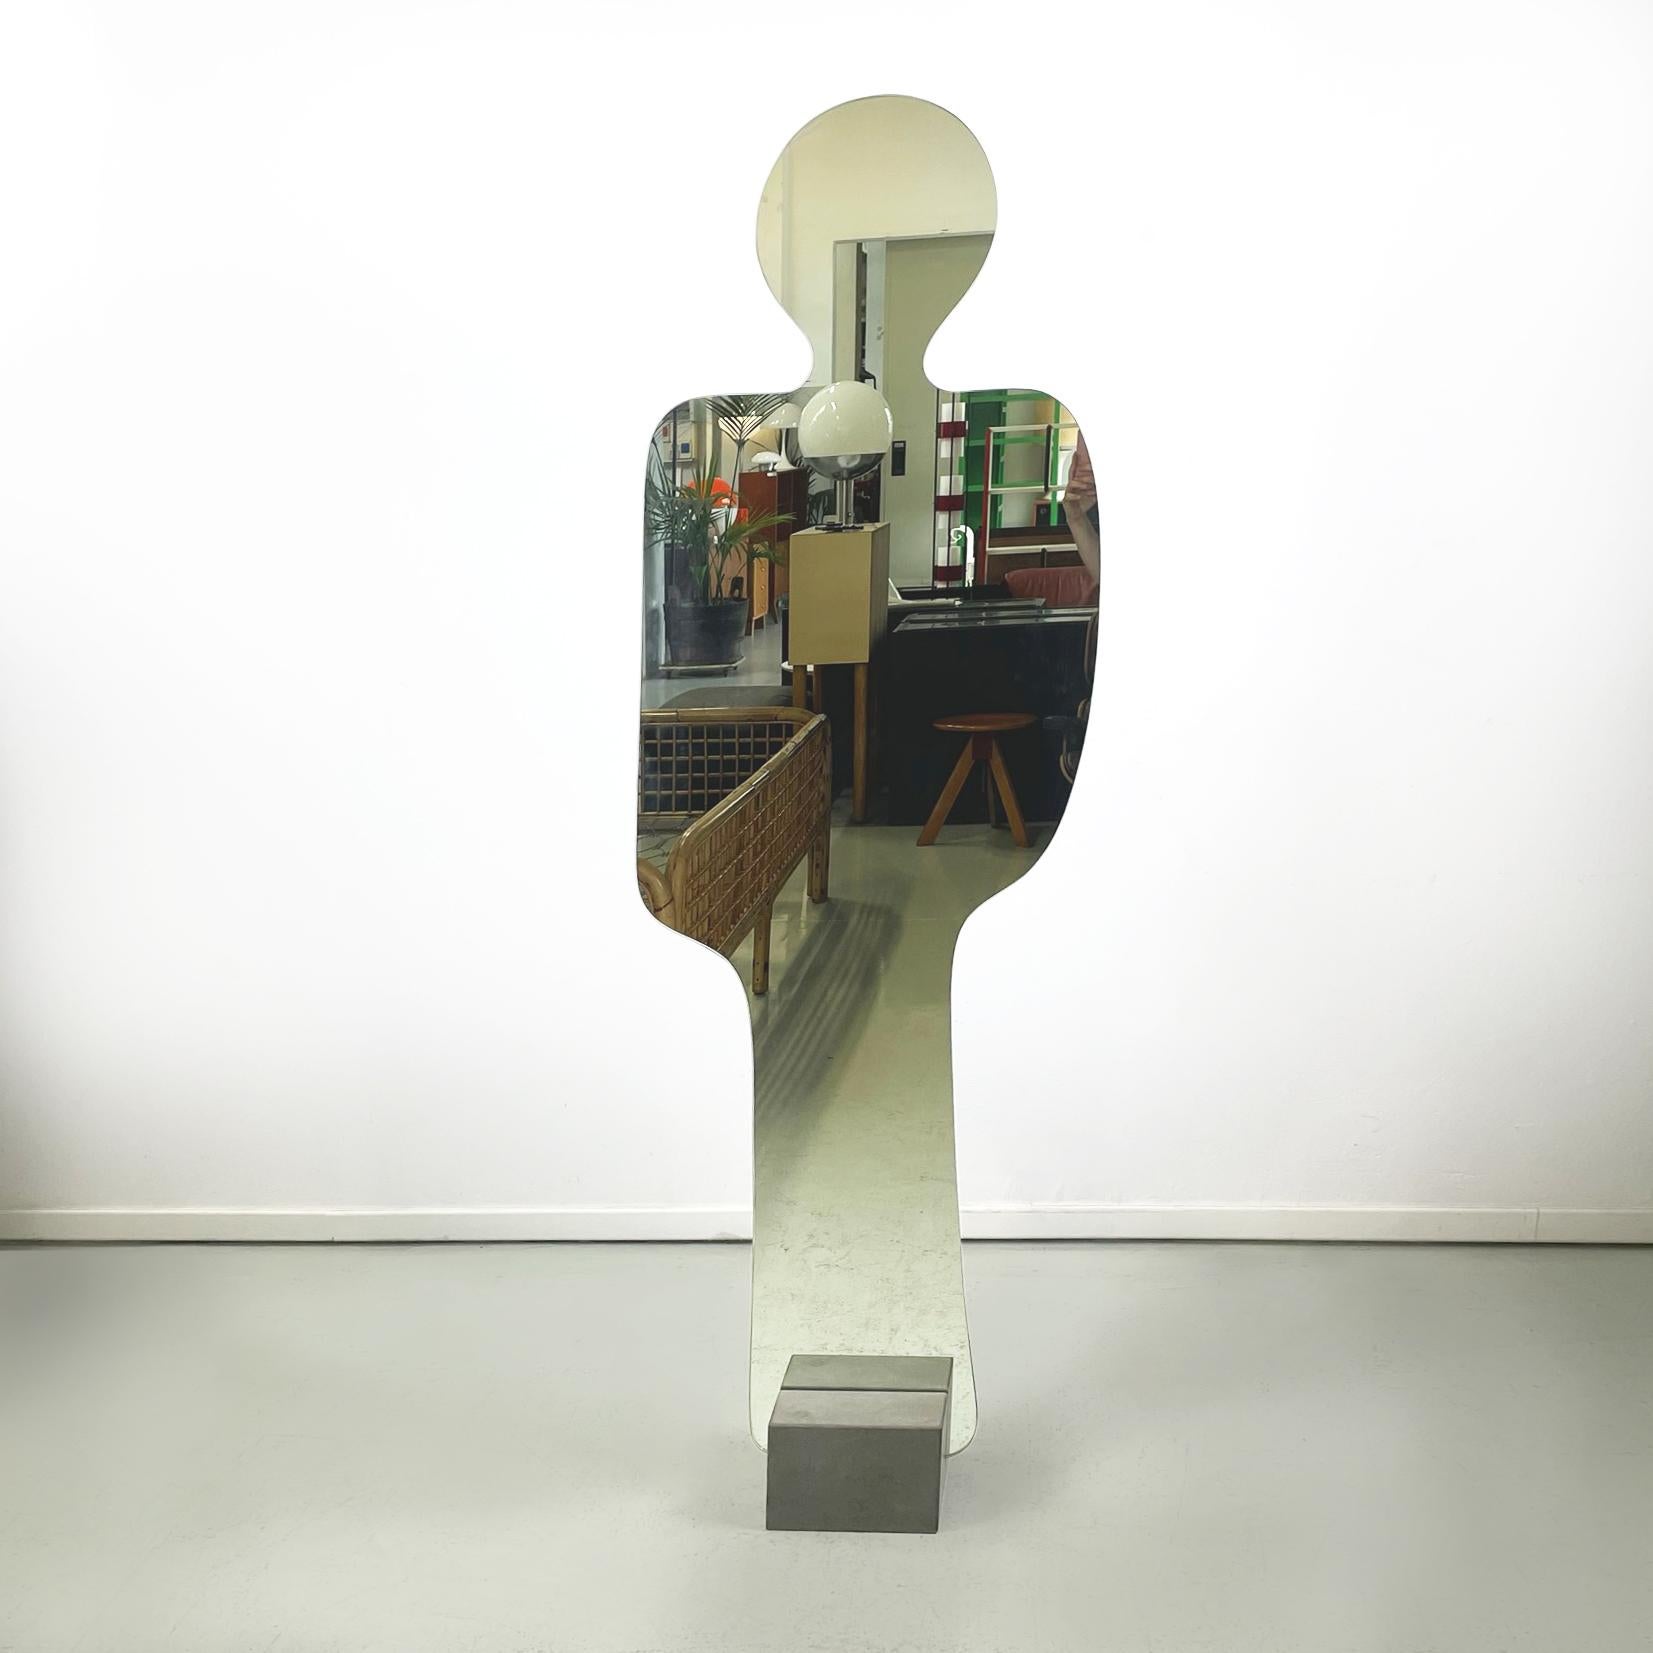 Miroir Narciso de Pierre Cardin pour Acerbis, 1970.
Miroir au sol iconique et vintage, autoportant et tout en longueur, mod. Narciso en forme d'homme. Le dos du miroir est en métal peint en noir. Le miroir s'insère dans la base carrée en pierre de